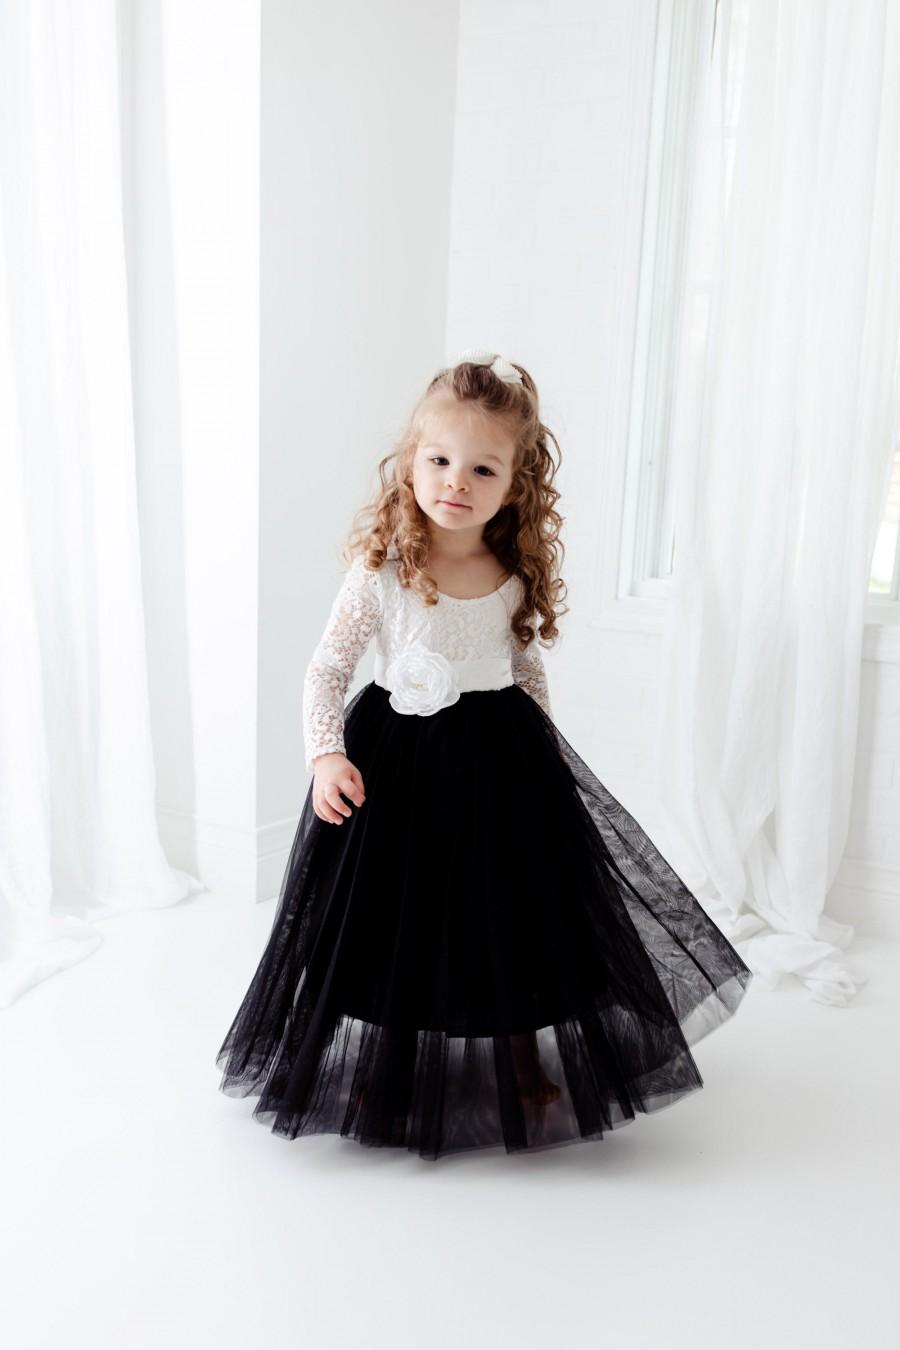 Mariage - Black and White Flower Girl Dress, Black Tulle Long Sleeve Dress, White Boho Dresses